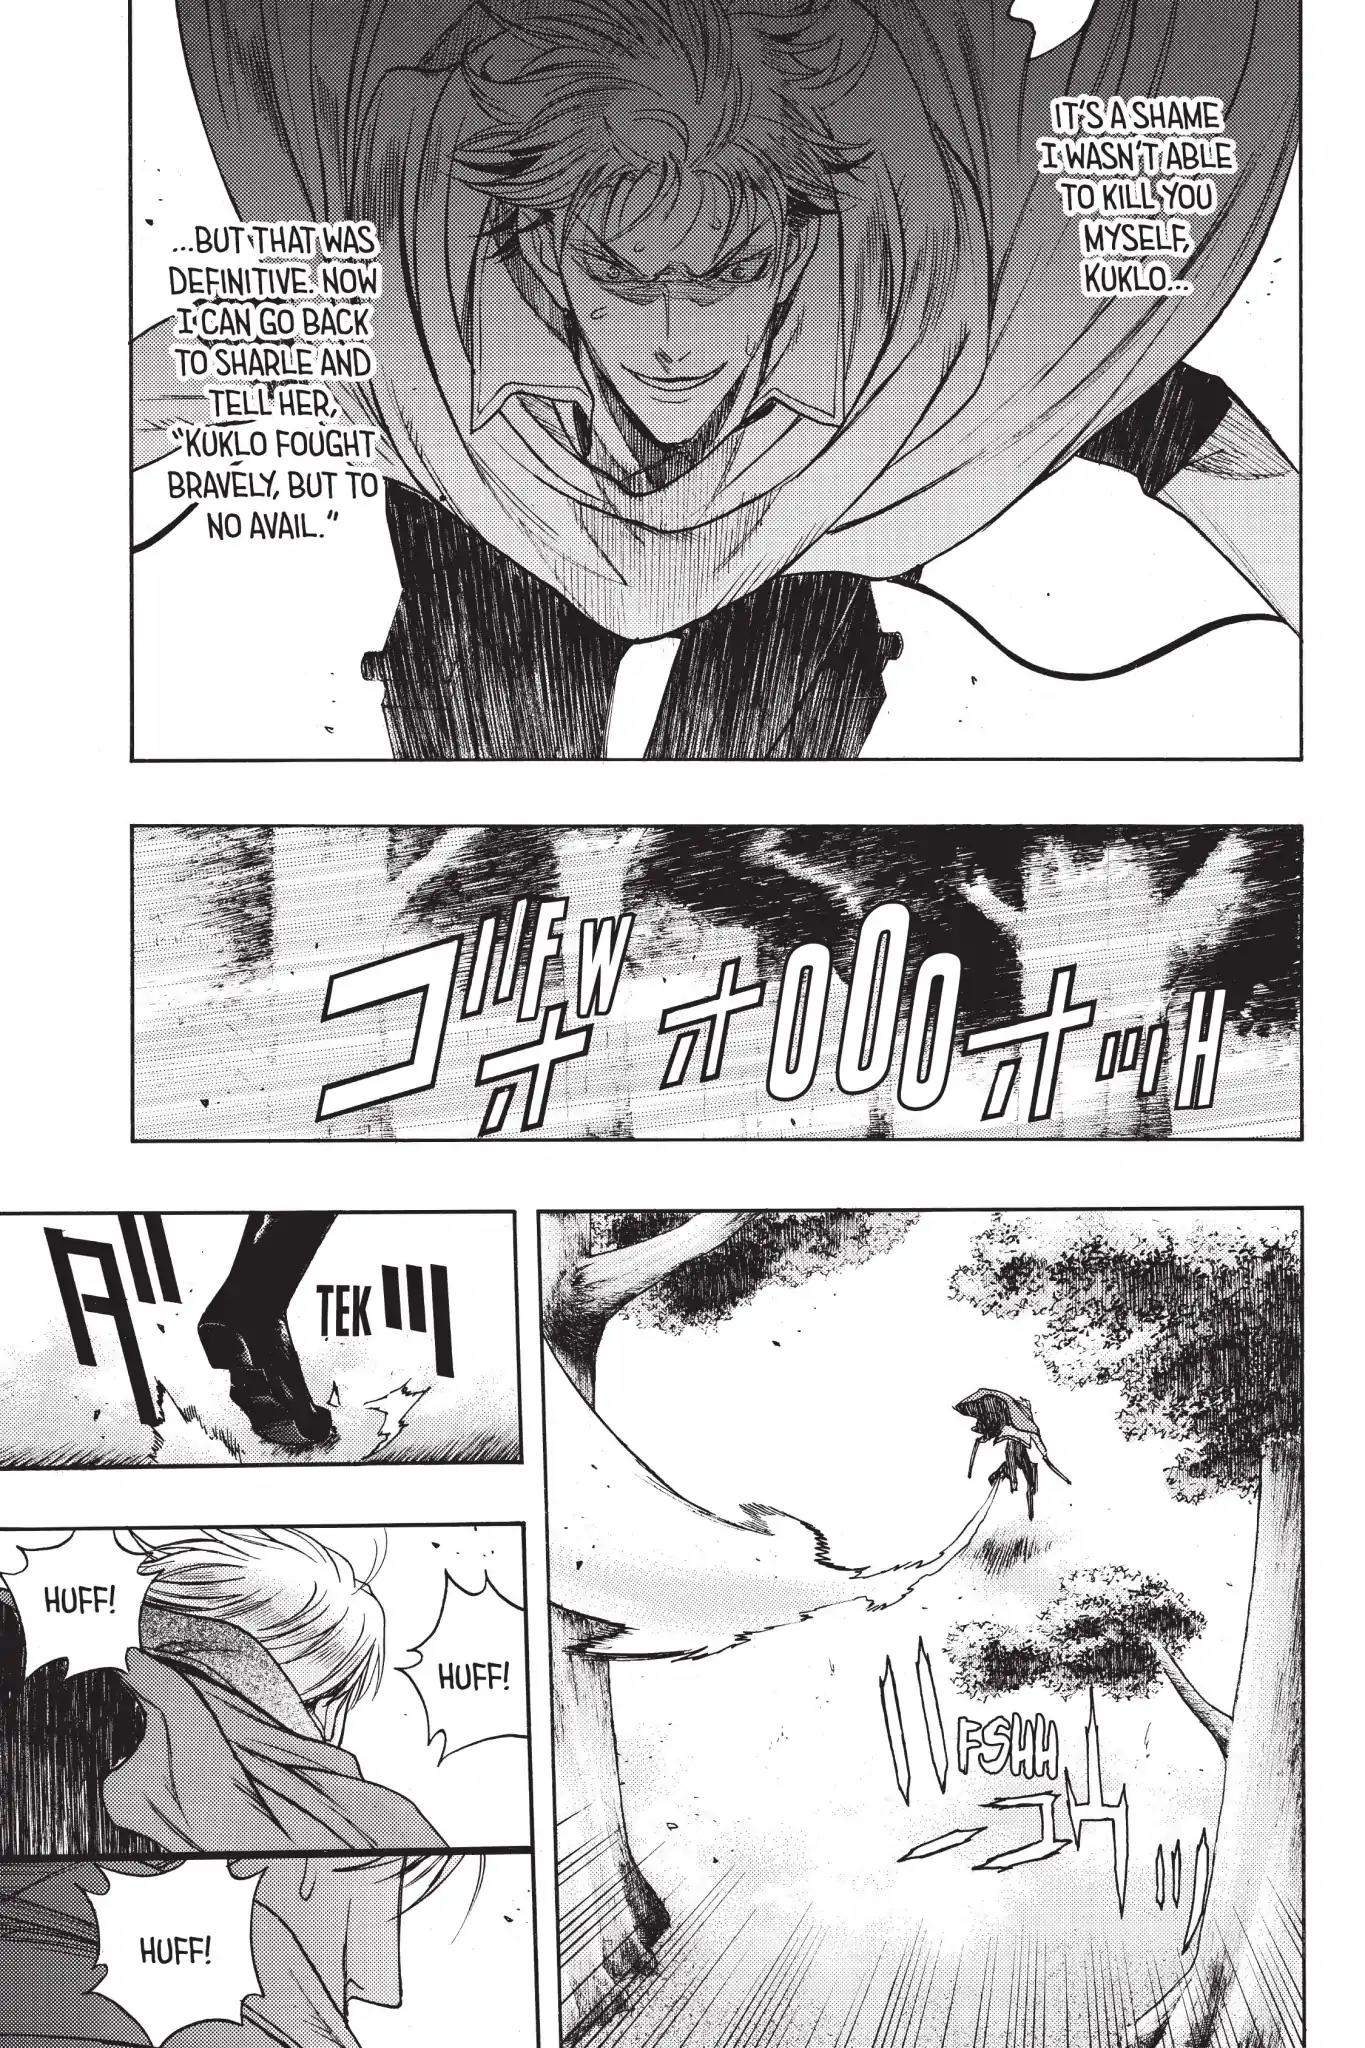 Shingeki no Kyojin - Before the Fall Vol.17 Chapter 64: